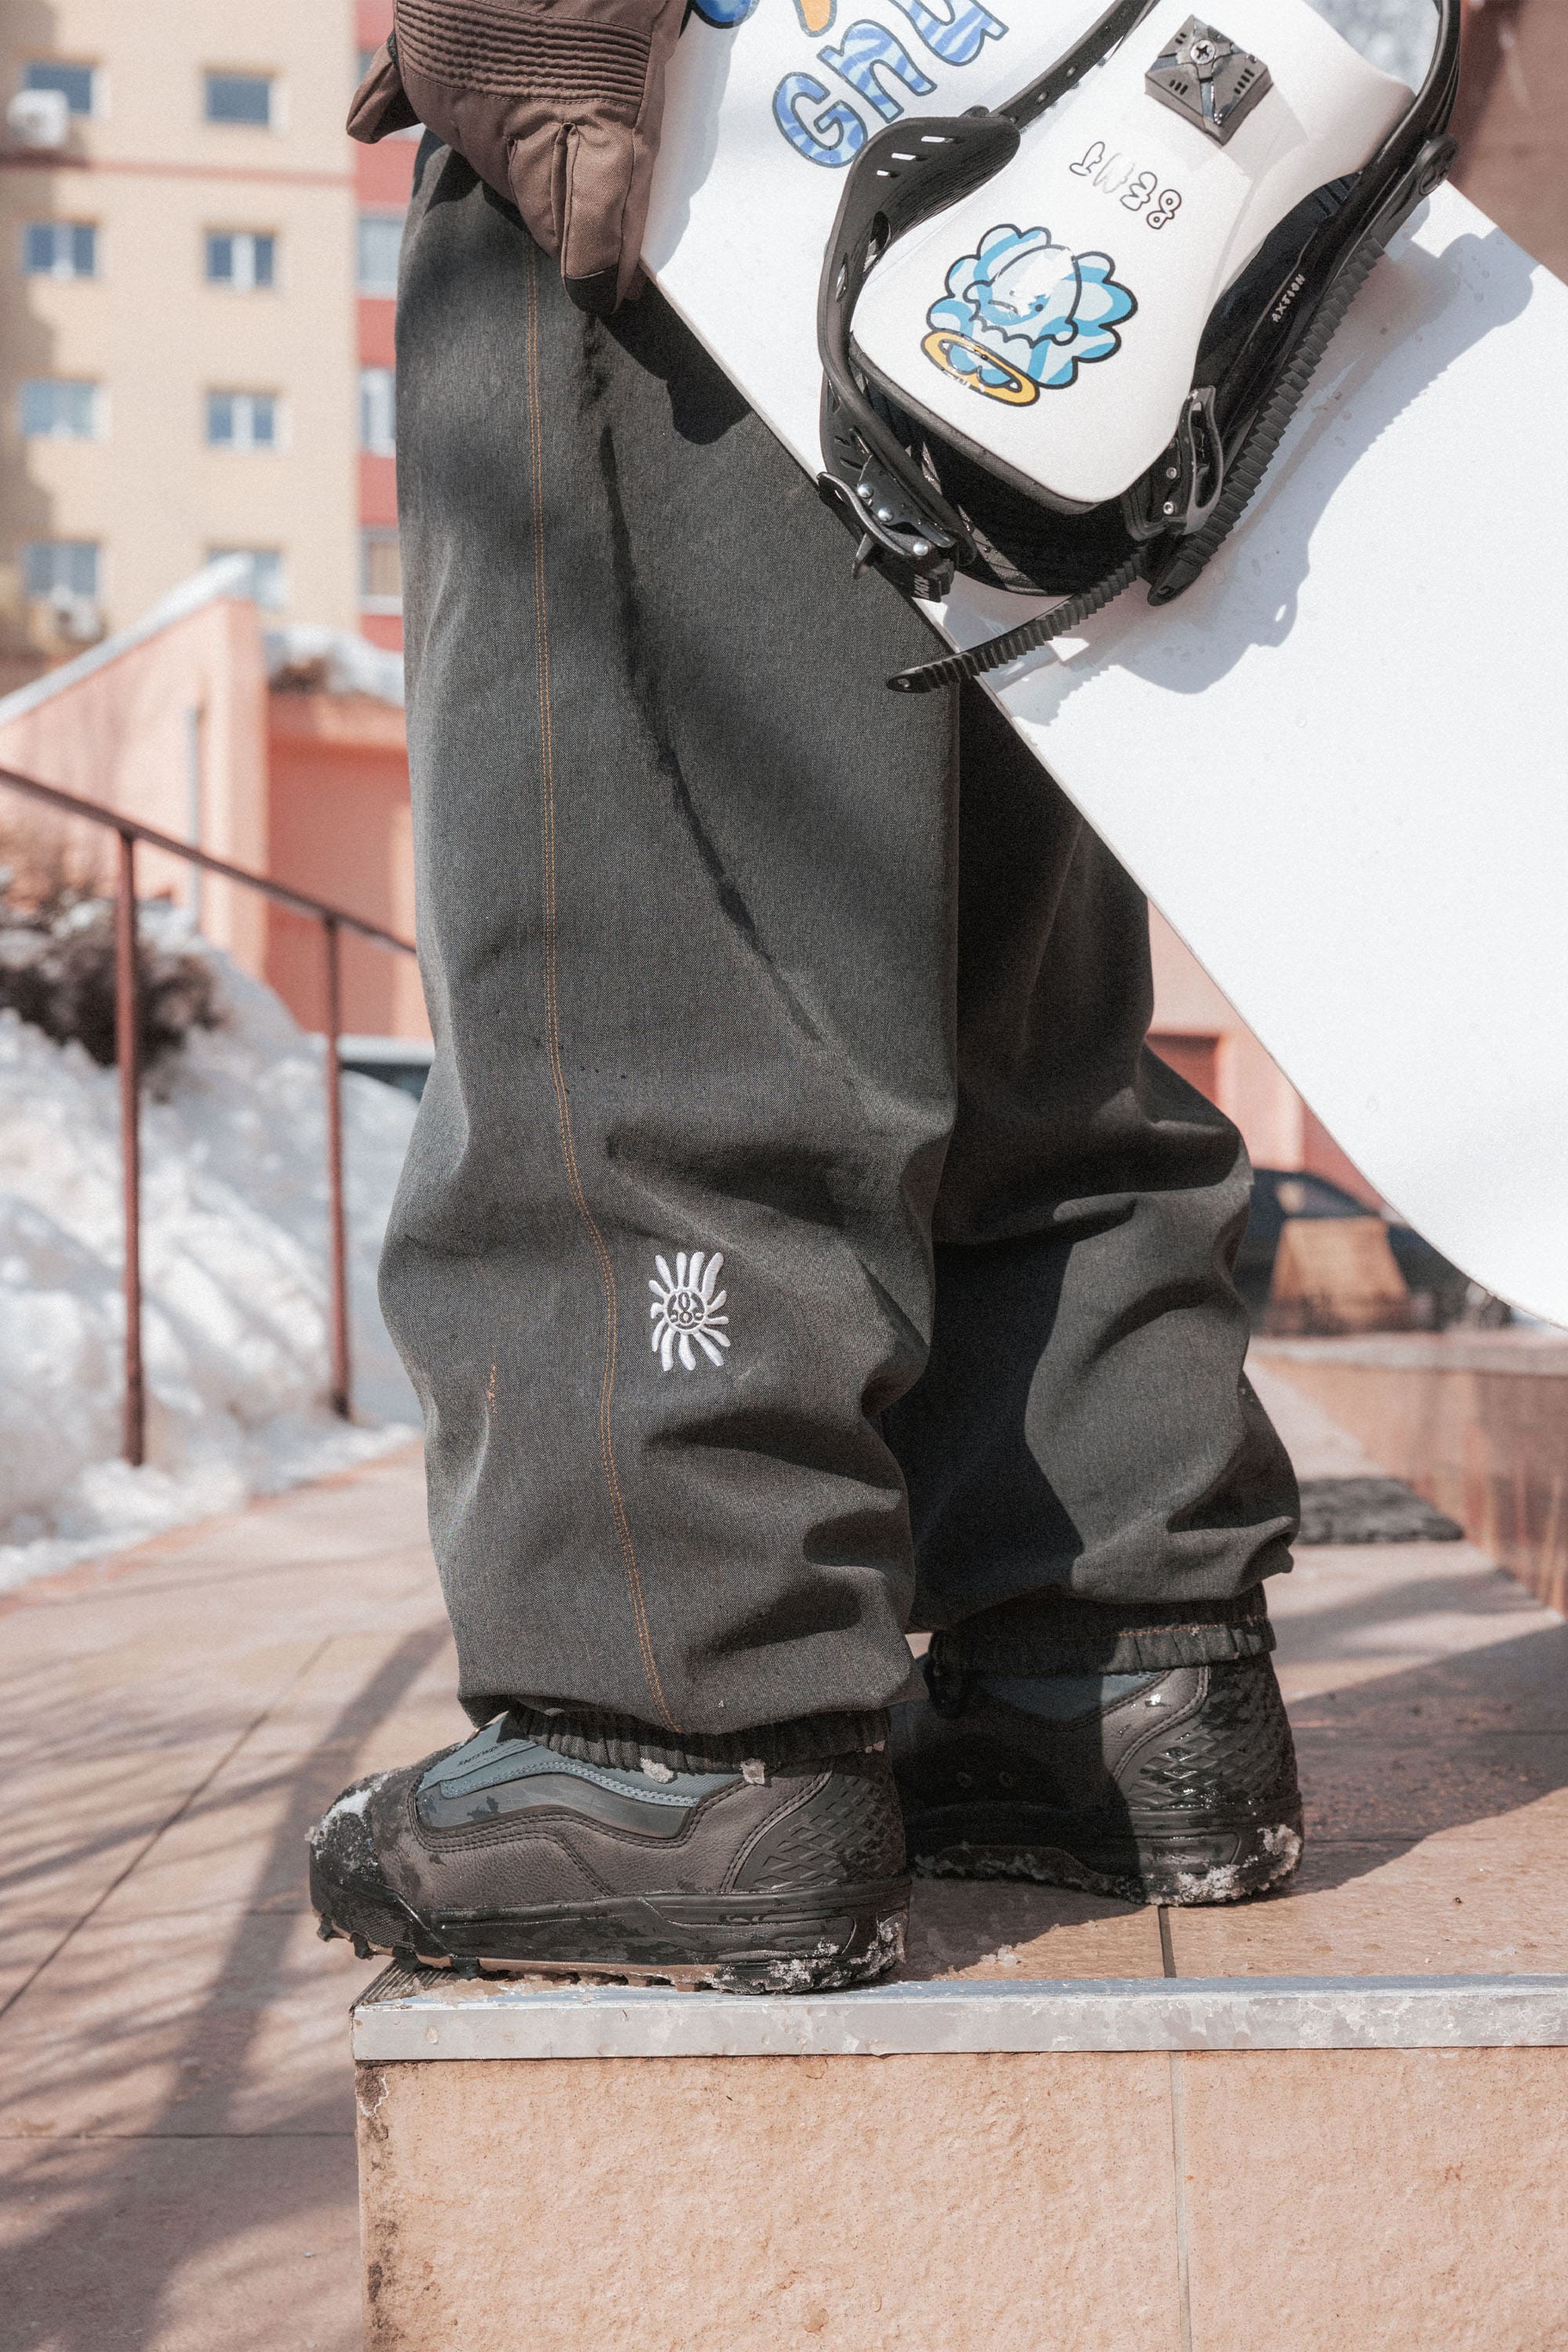 686 Technical Apparel  Men's Snow Pants & Bibs – 686.com